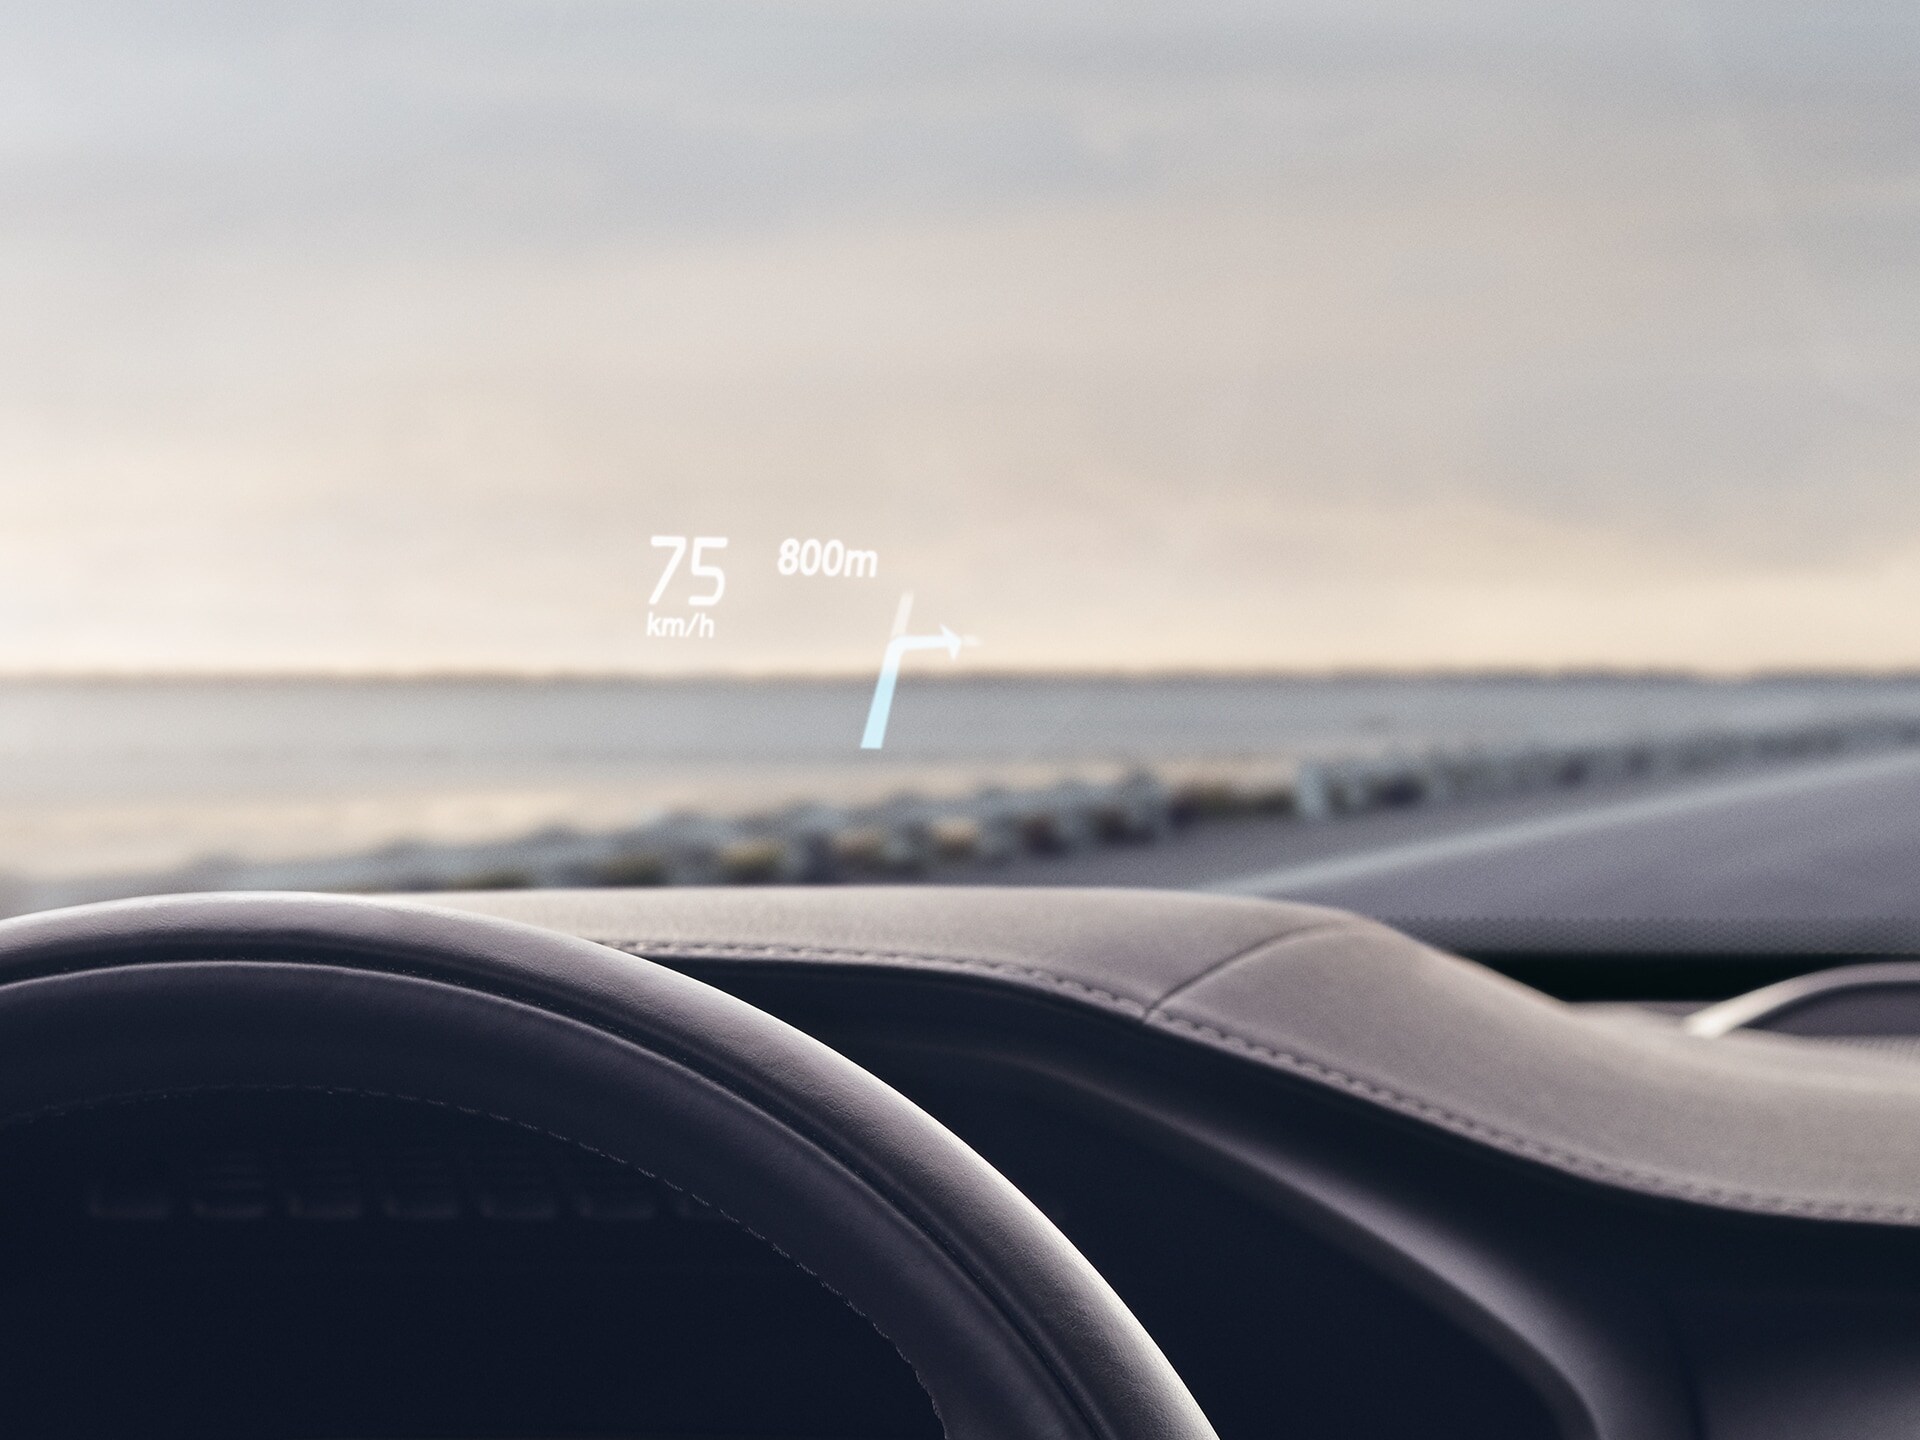 En el interior de un Volvo, la velocidad de conducción se muestra en el parabrisas